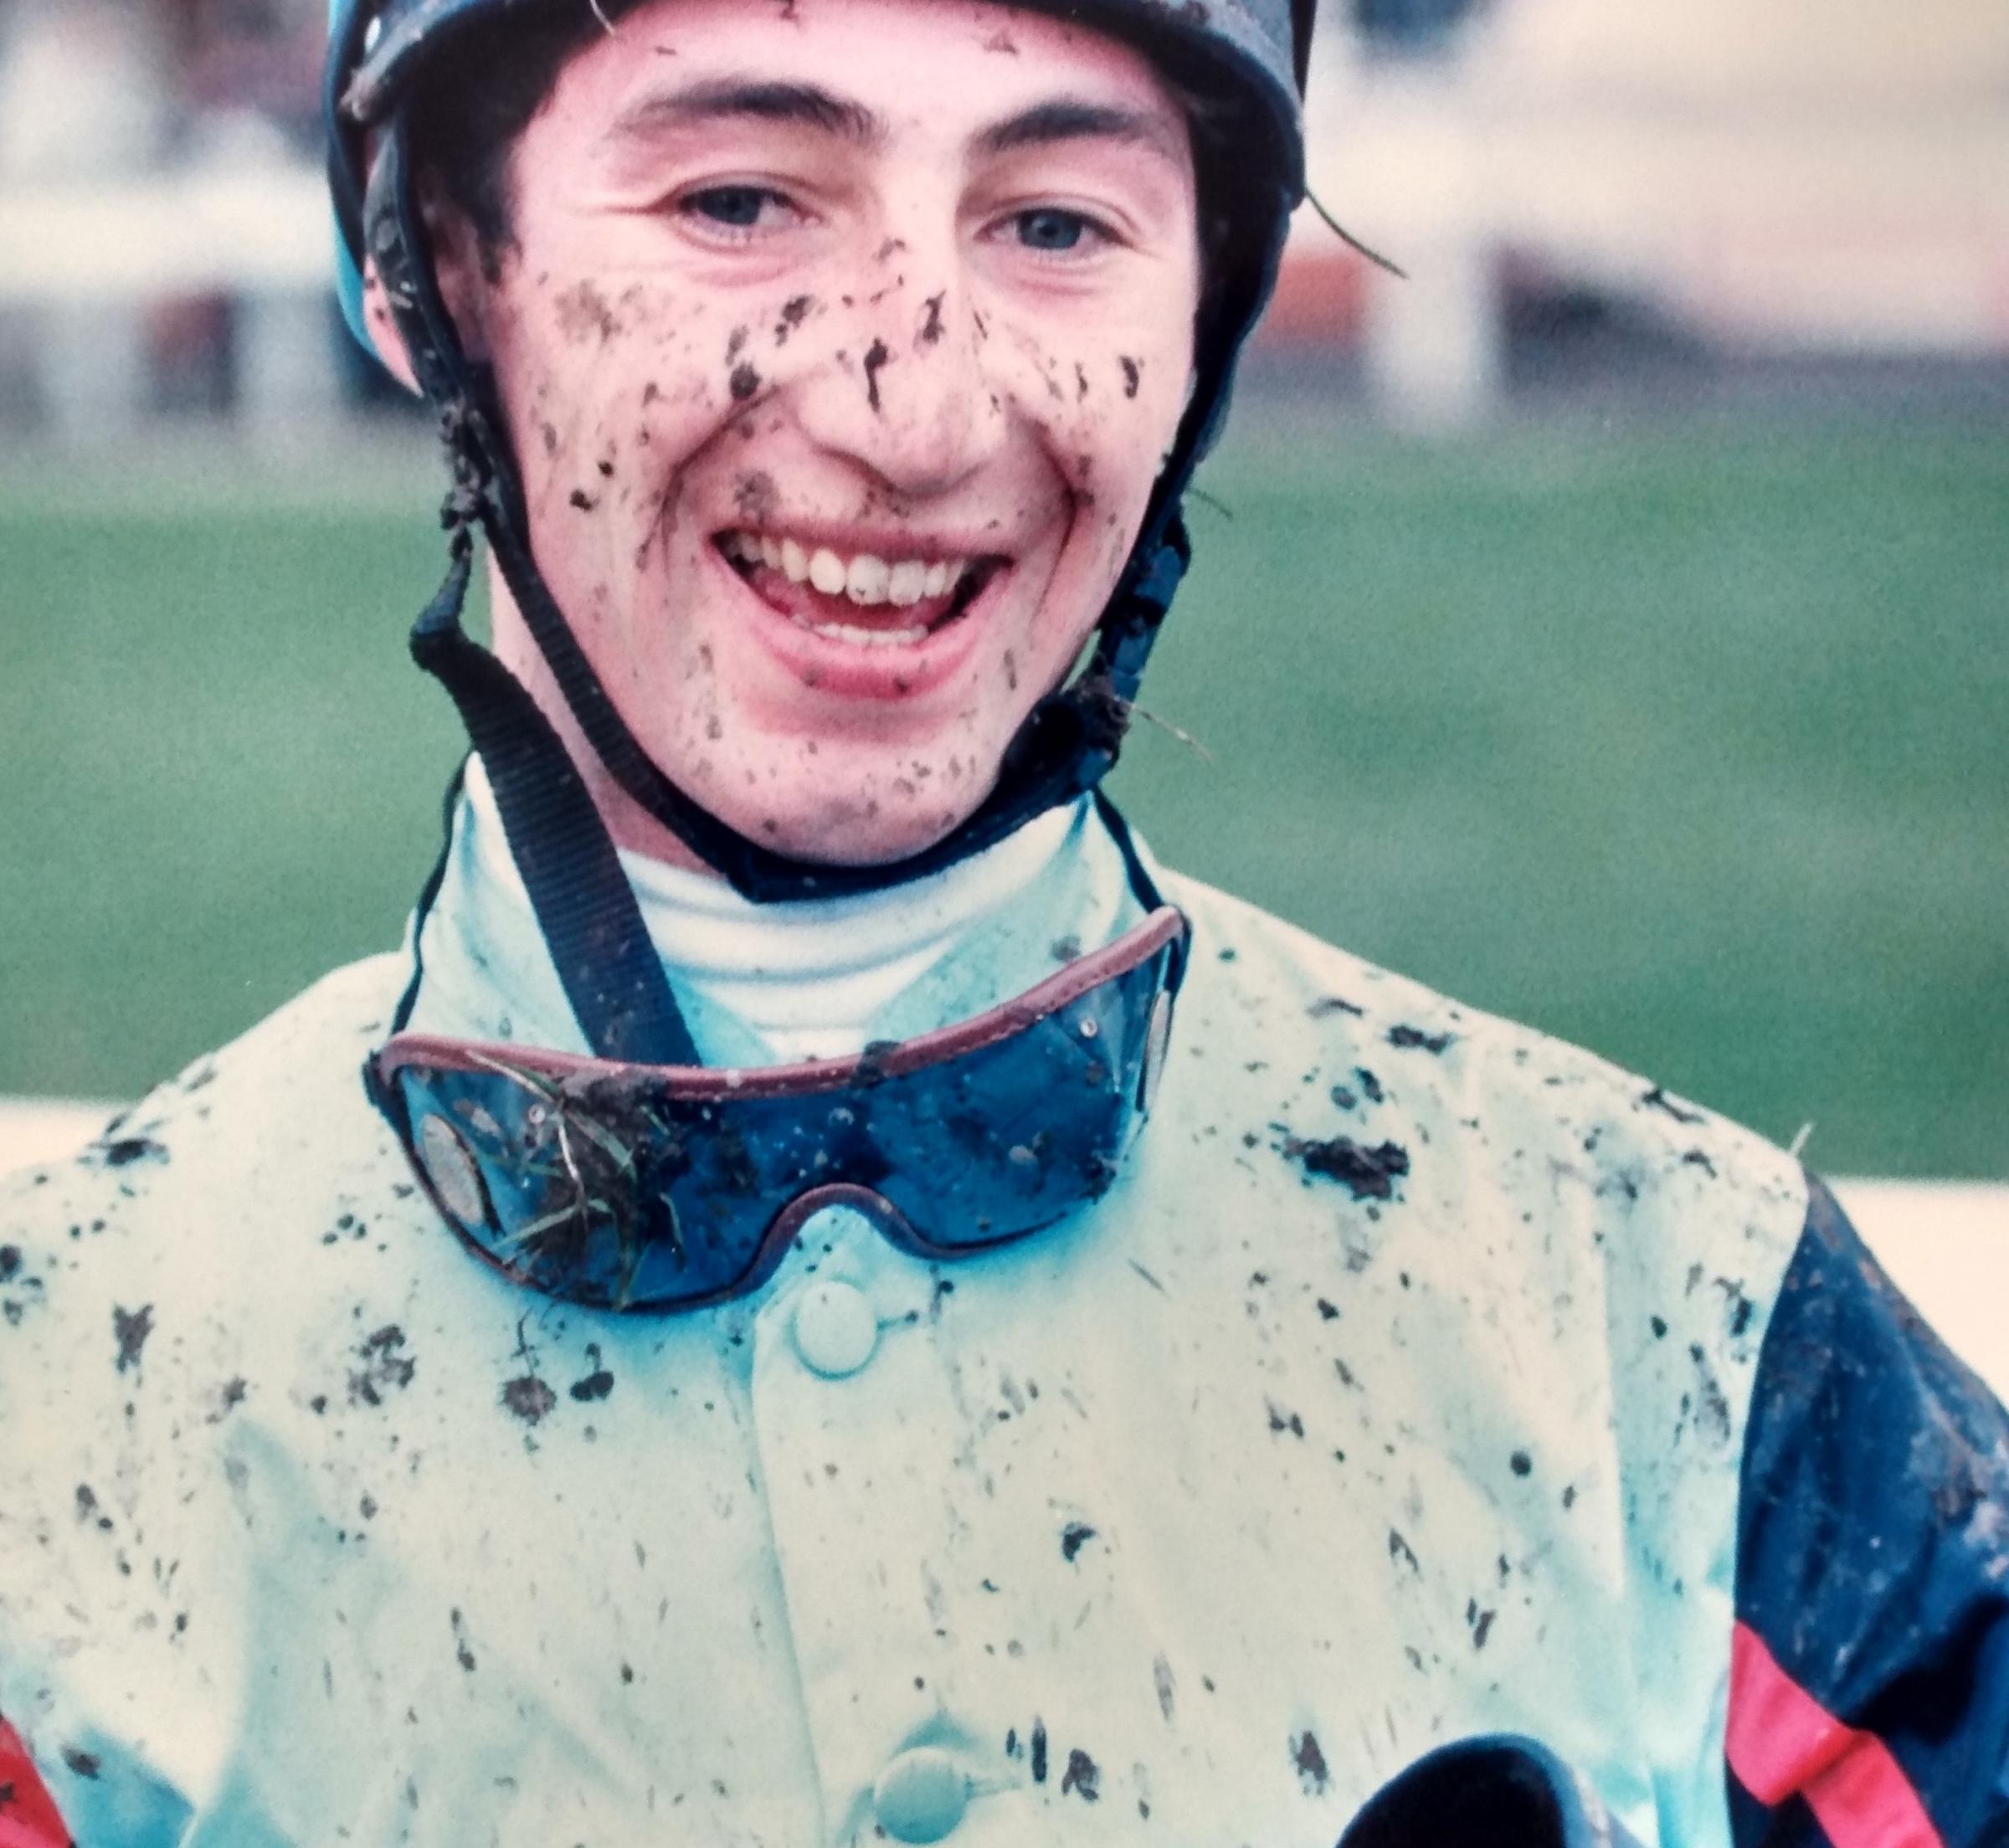 A mud-spattered but still smiling jockey David Finnegan in November 1995 